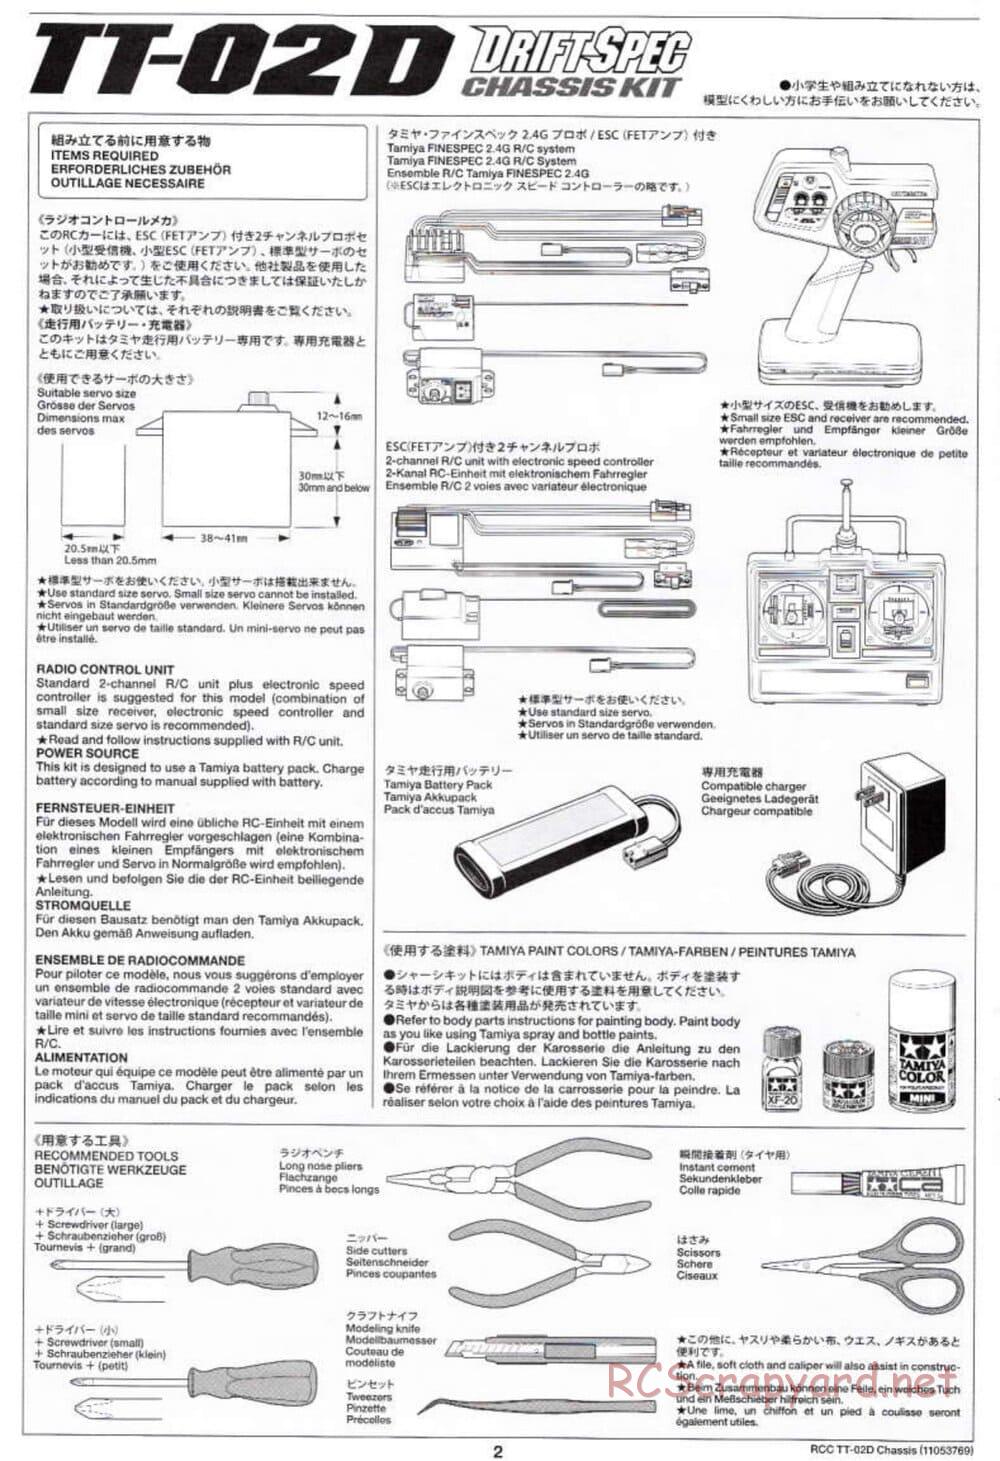 Tamiya - TT-02D Chassis - Manual - Page 2